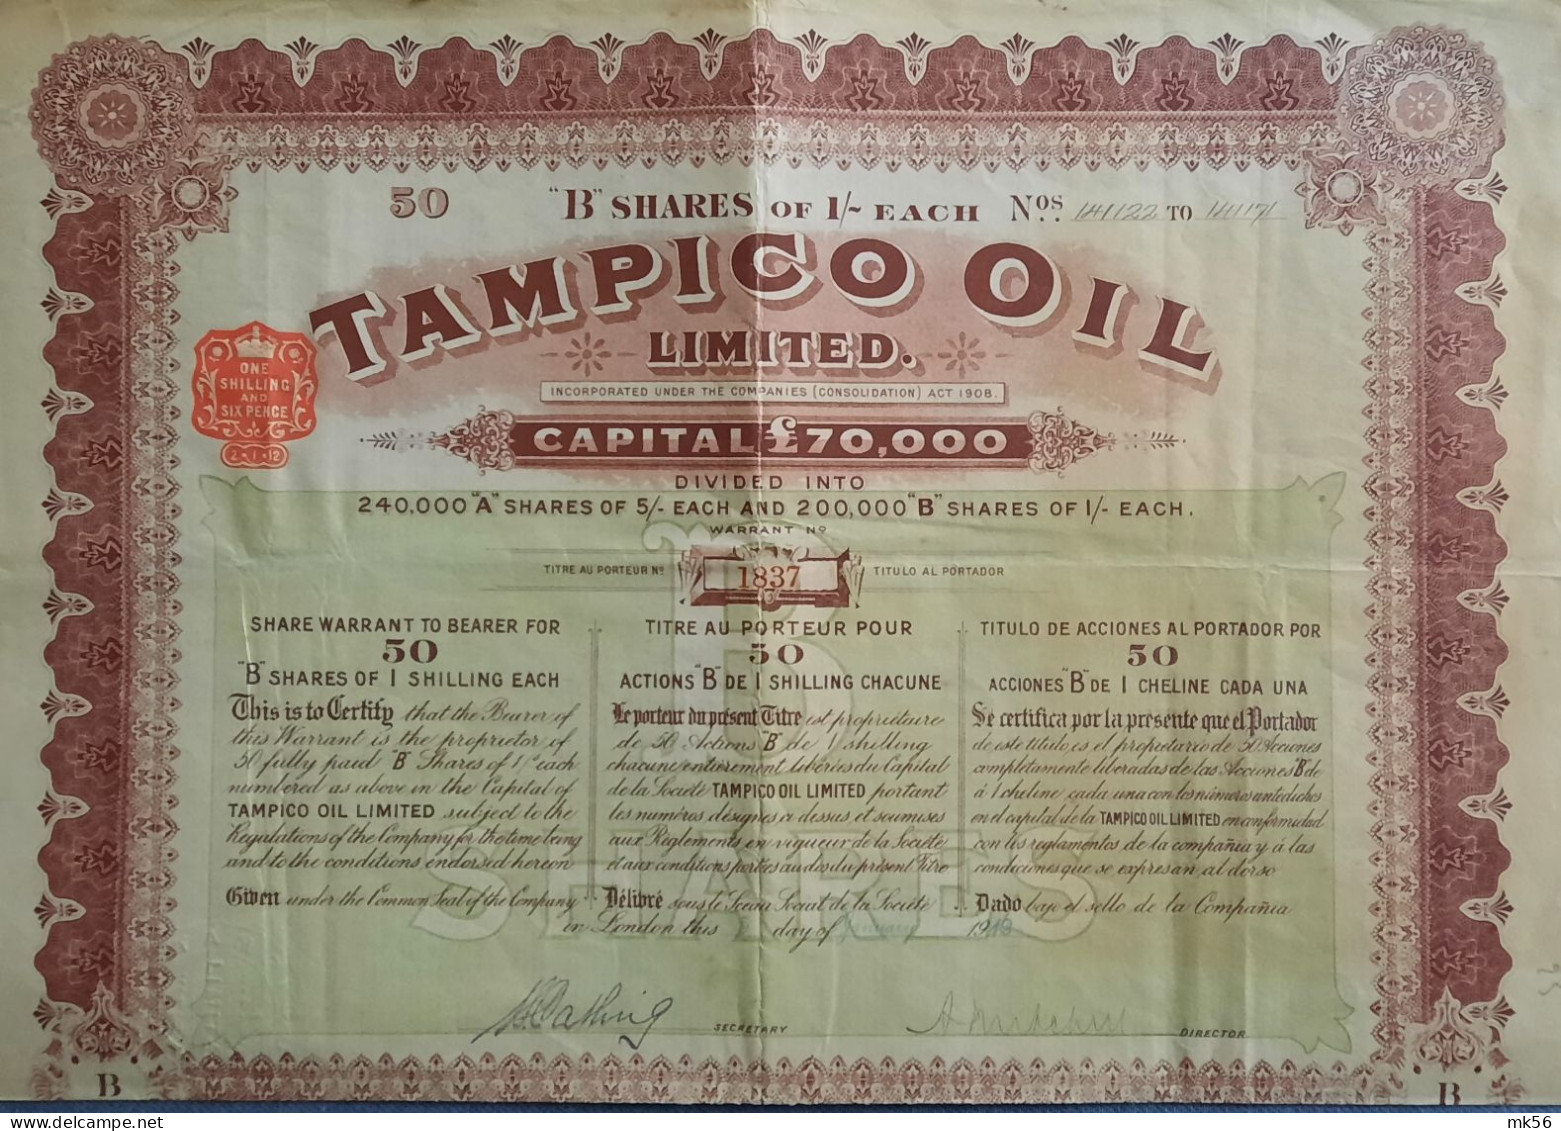 Tampico Oil Ltd - 1919 - London - Share Warrant To Bearer For 50 B-shares - Oil